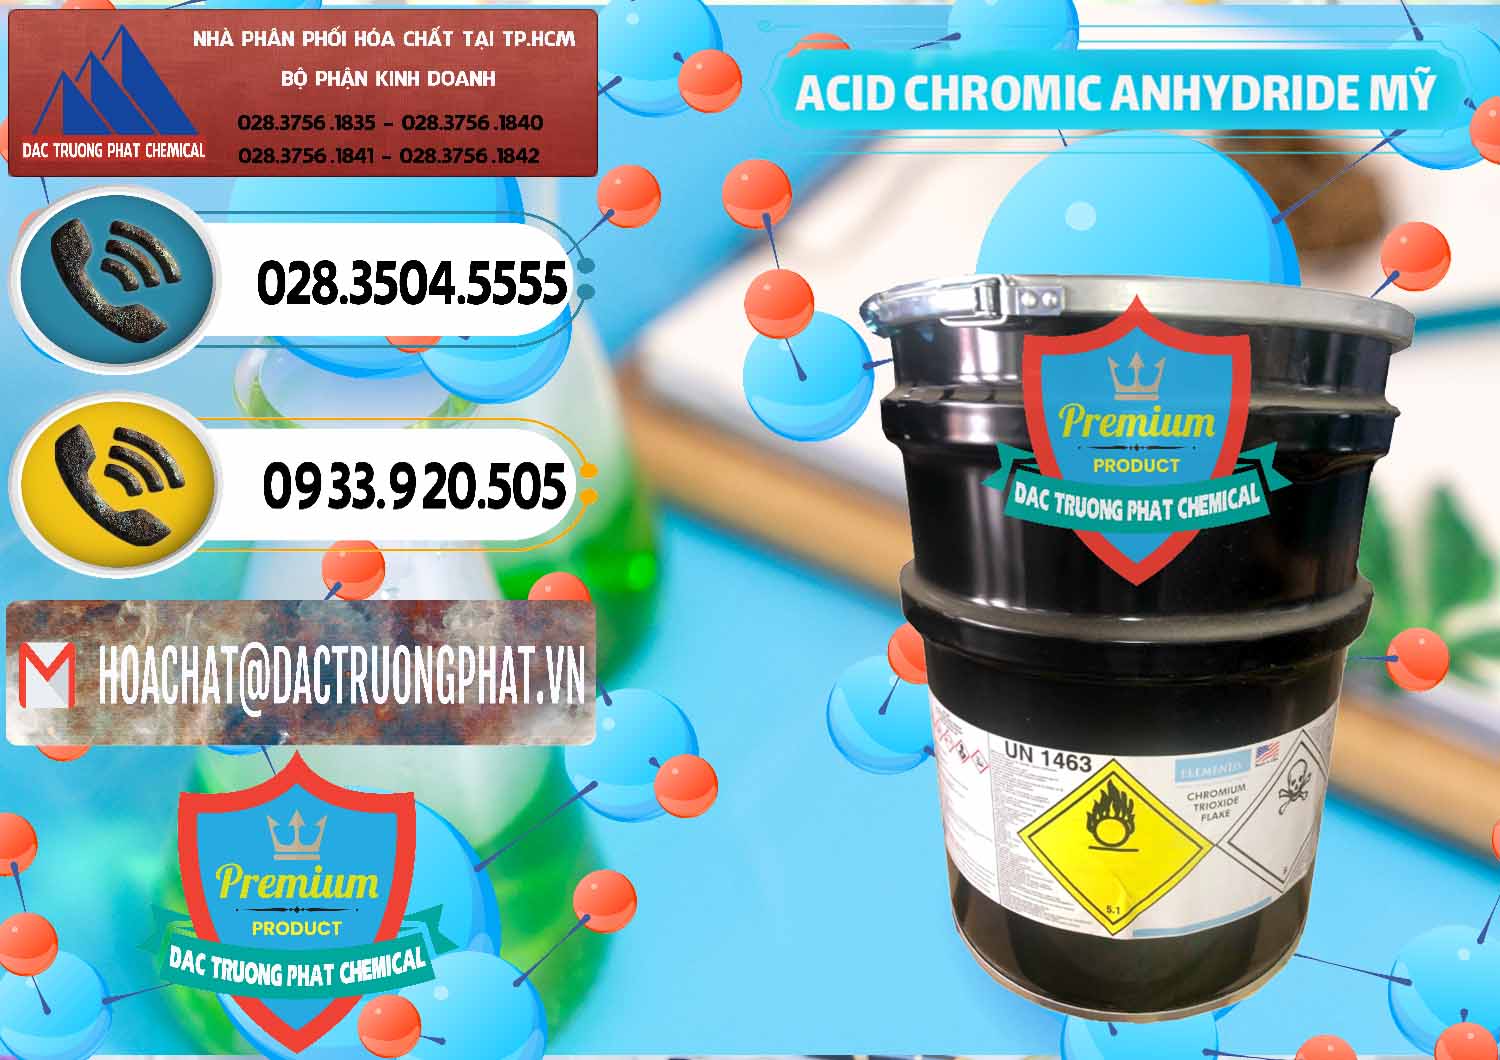 Cty chuyên bán ( cung cấp ) Acid Chromic Anhydride - Cromic CRO3 USA Mỹ - 0364 - Nơi phân phối _ cung cấp hóa chất tại TP.HCM - hoachatdetnhuom.vn